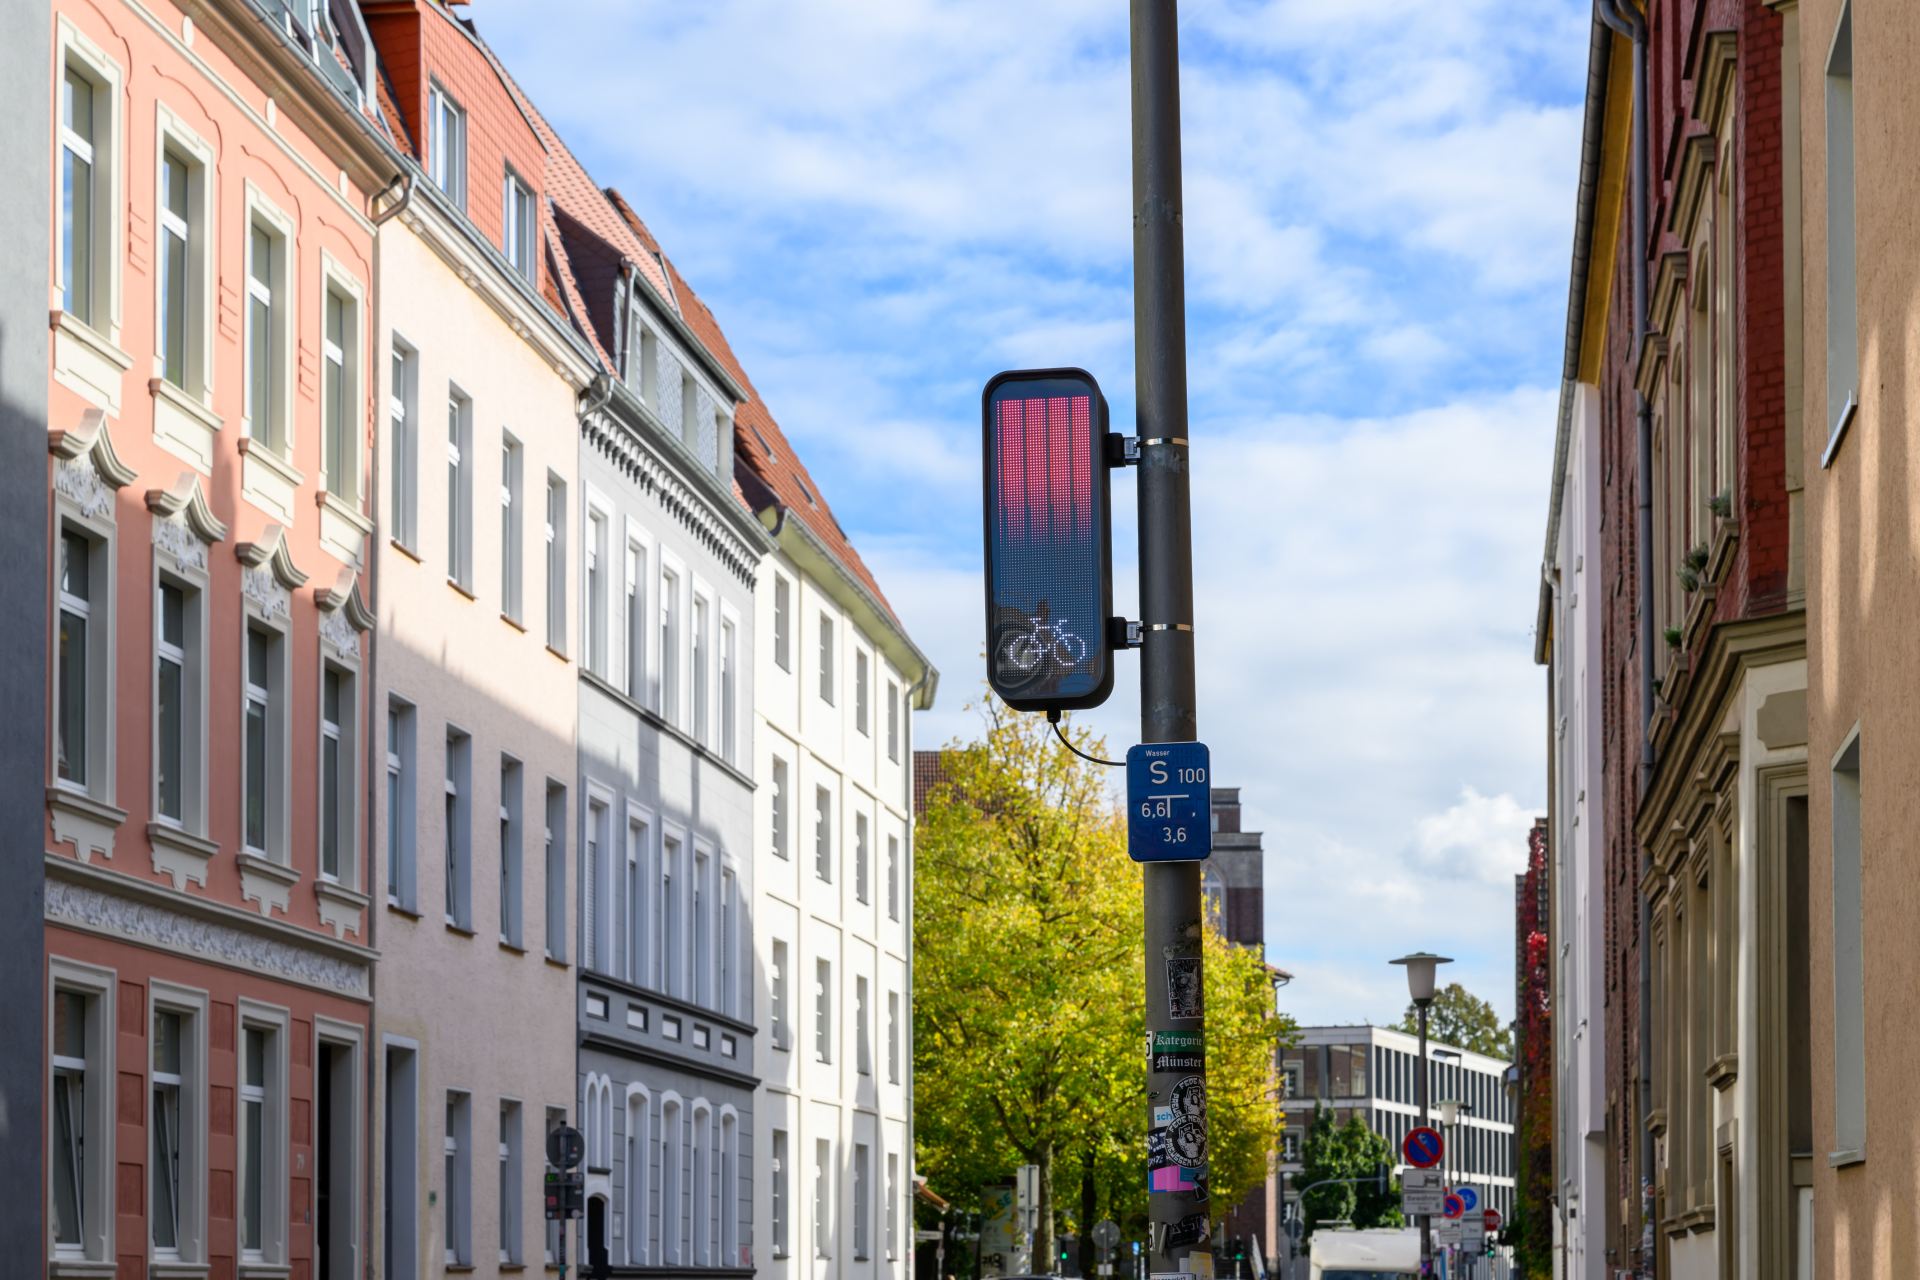 Unterwegs mit dem Fahrradbüro der Stadt Münster bei der Fahrradtour: Wege bereiten fürs Radeln und Klima